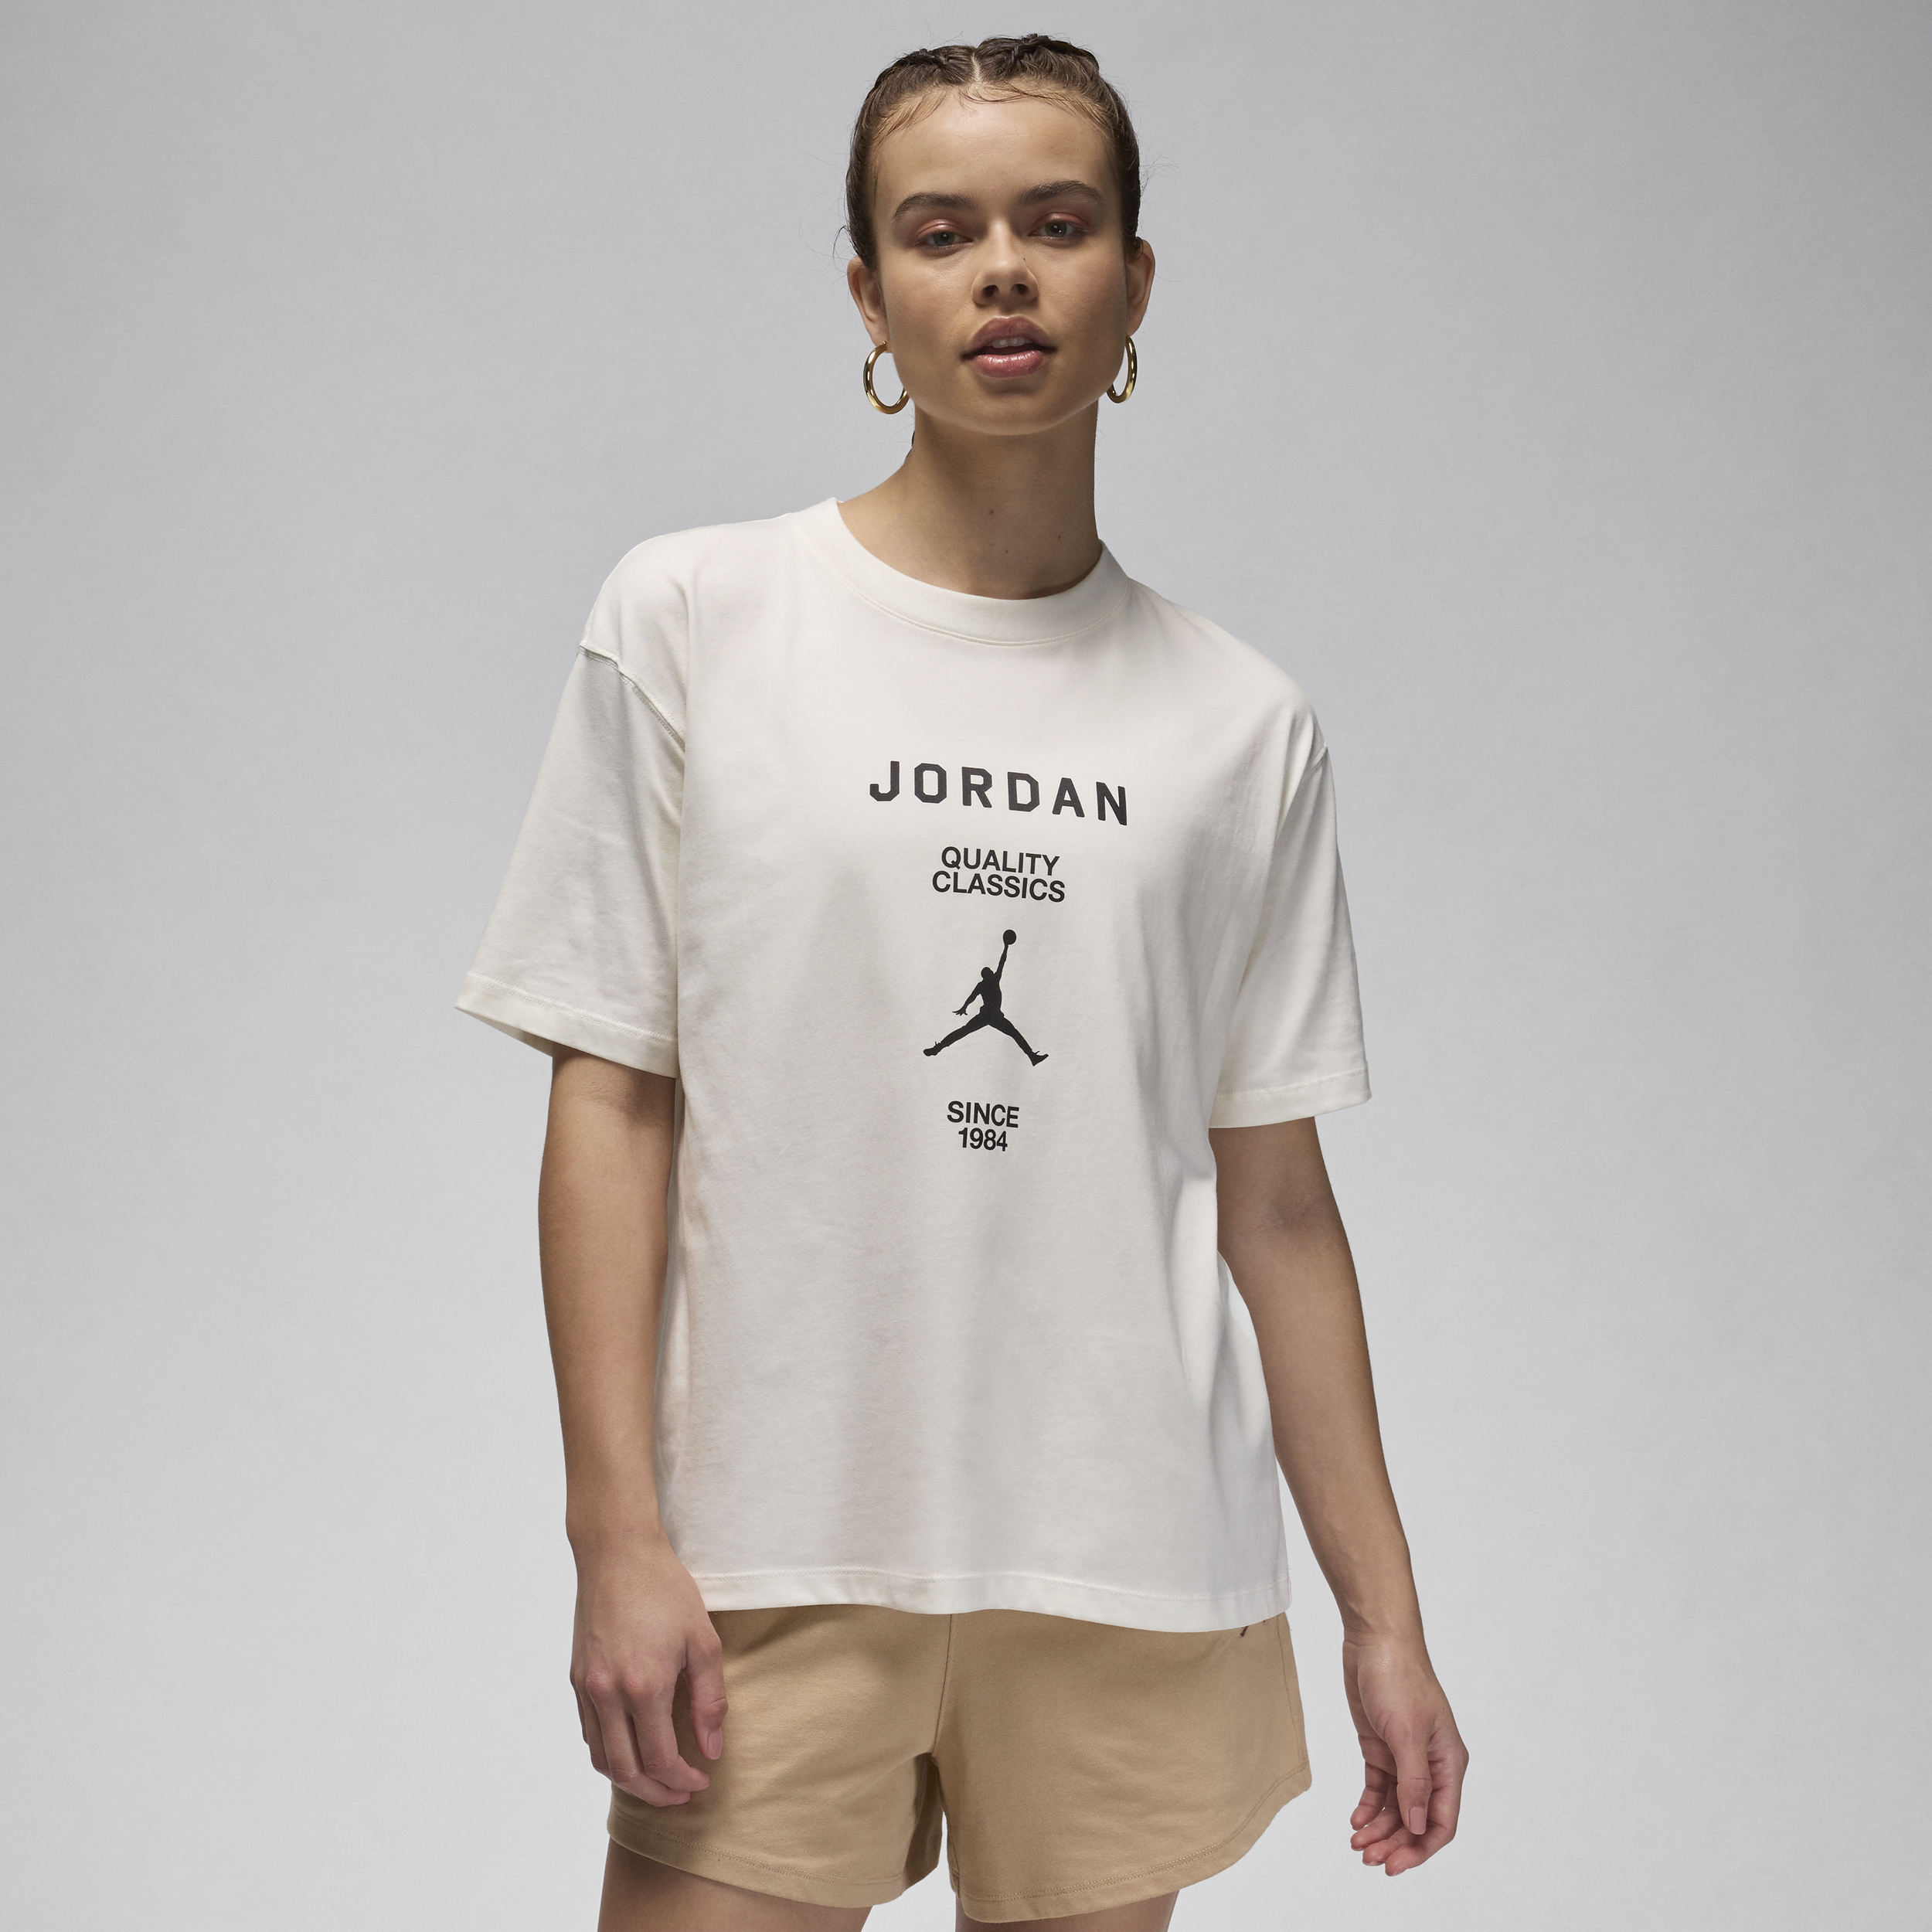 Jordan-kæreste-T-shirt til kvinder - hvid